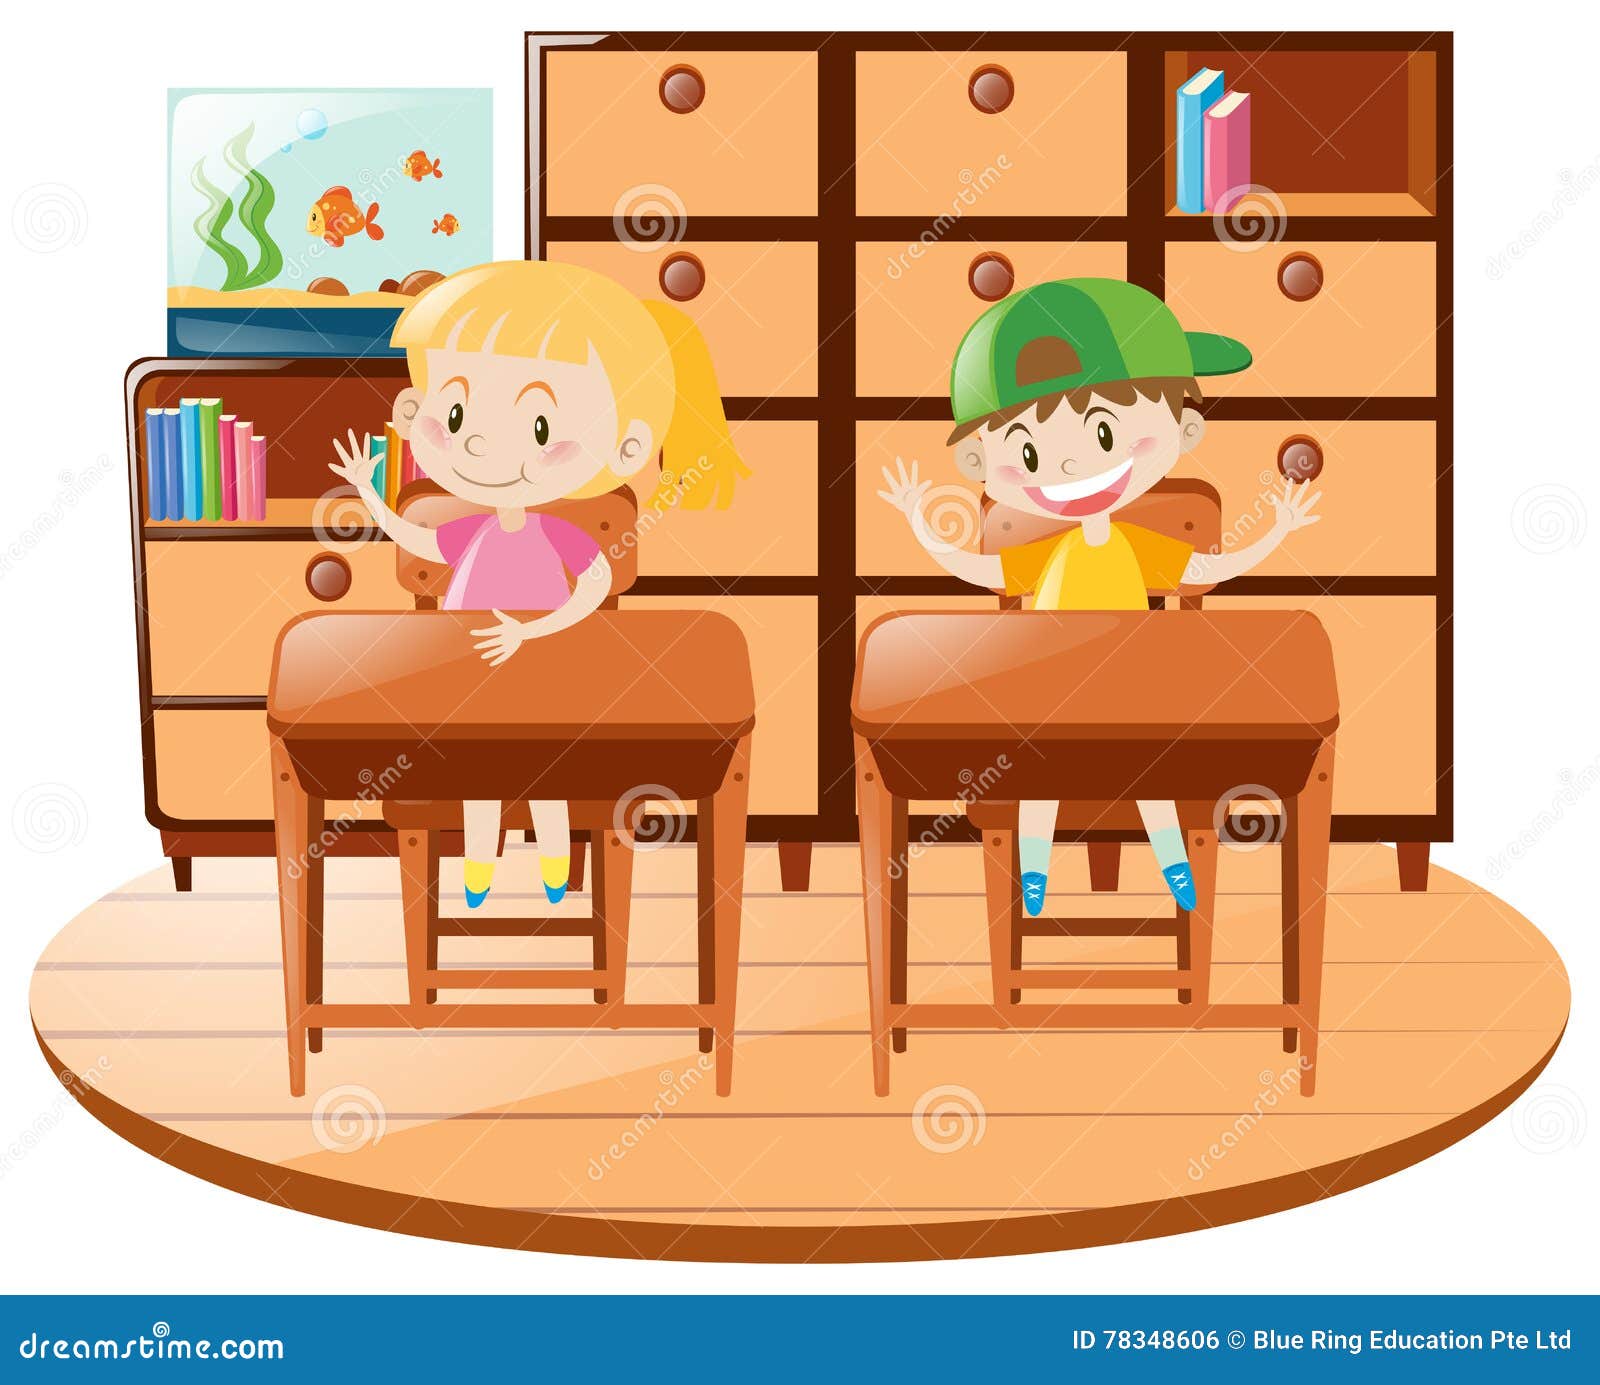 Мальчик и девочка сидят внутри шкафа детский рисунок